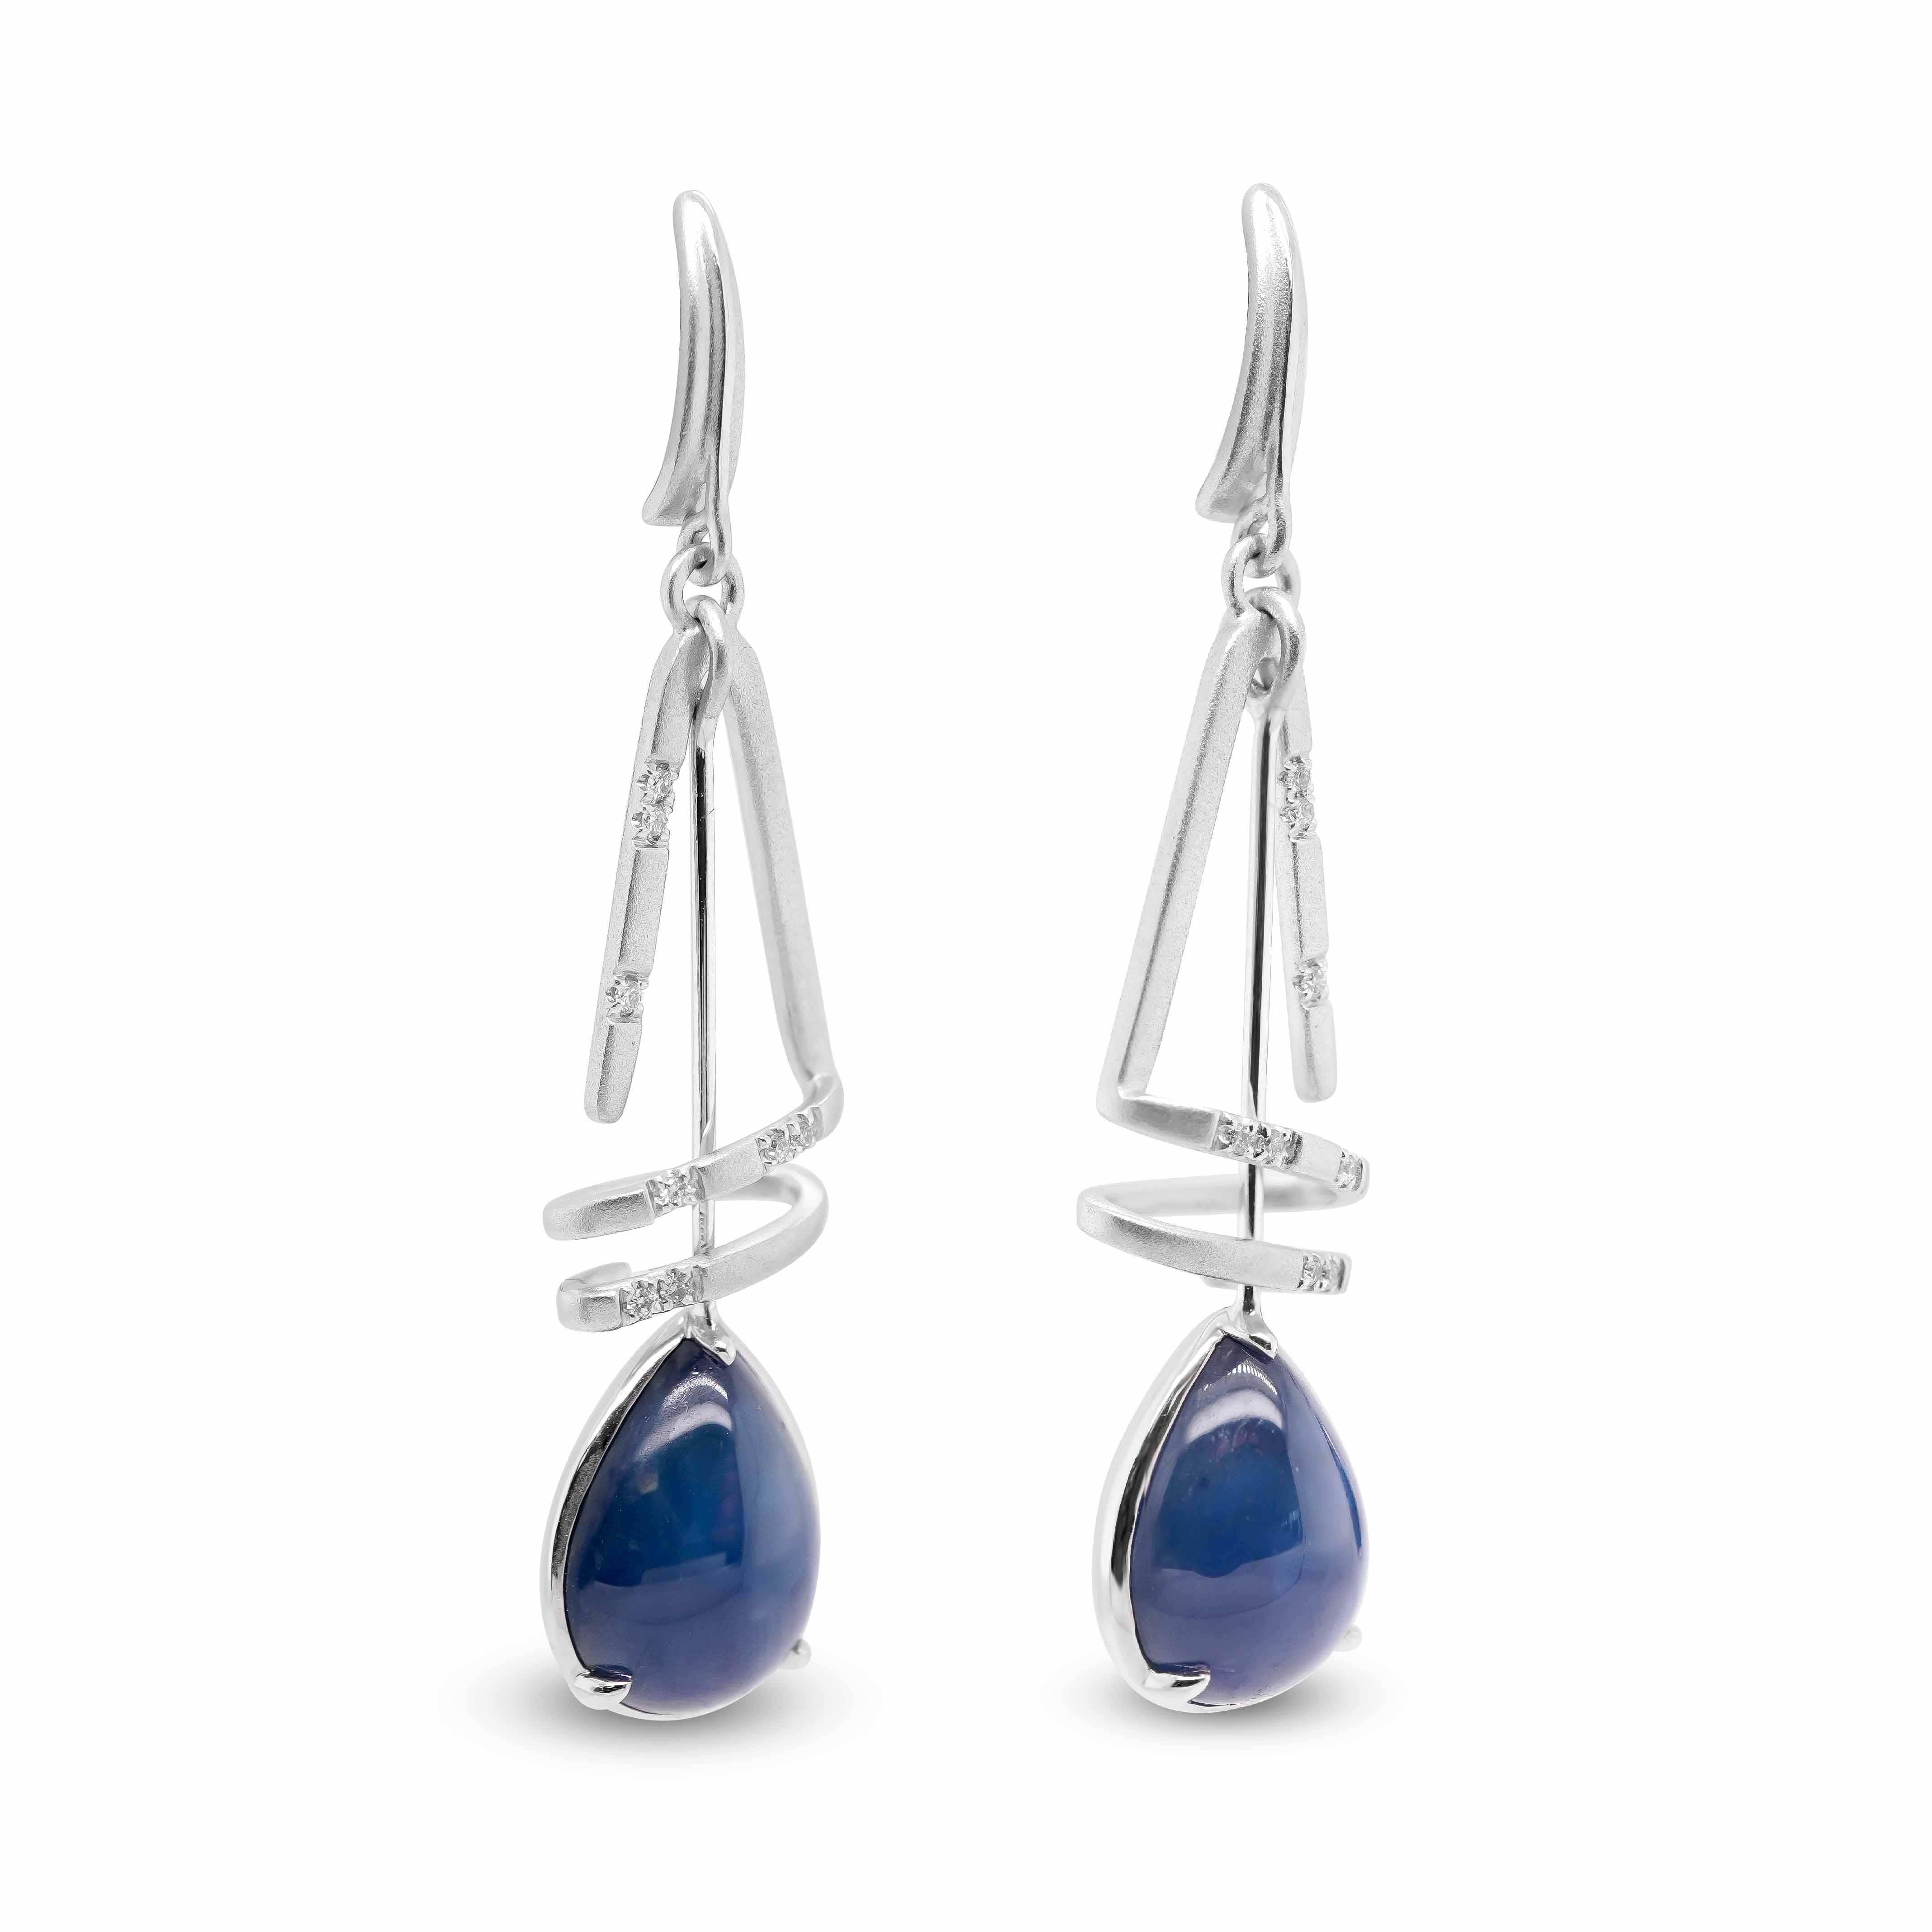  Ein Paar Ohrringe, jeweils bestehend aus einem birnenförmigen Saphir mit einem Gewicht von 6,74 ct, der von einer Spirale aus 16 weißen Diamanten gehalten wird.
Blaue Saphire sind heute sehr begehrte Edelsteine. Ihre atemberaubende Palette an